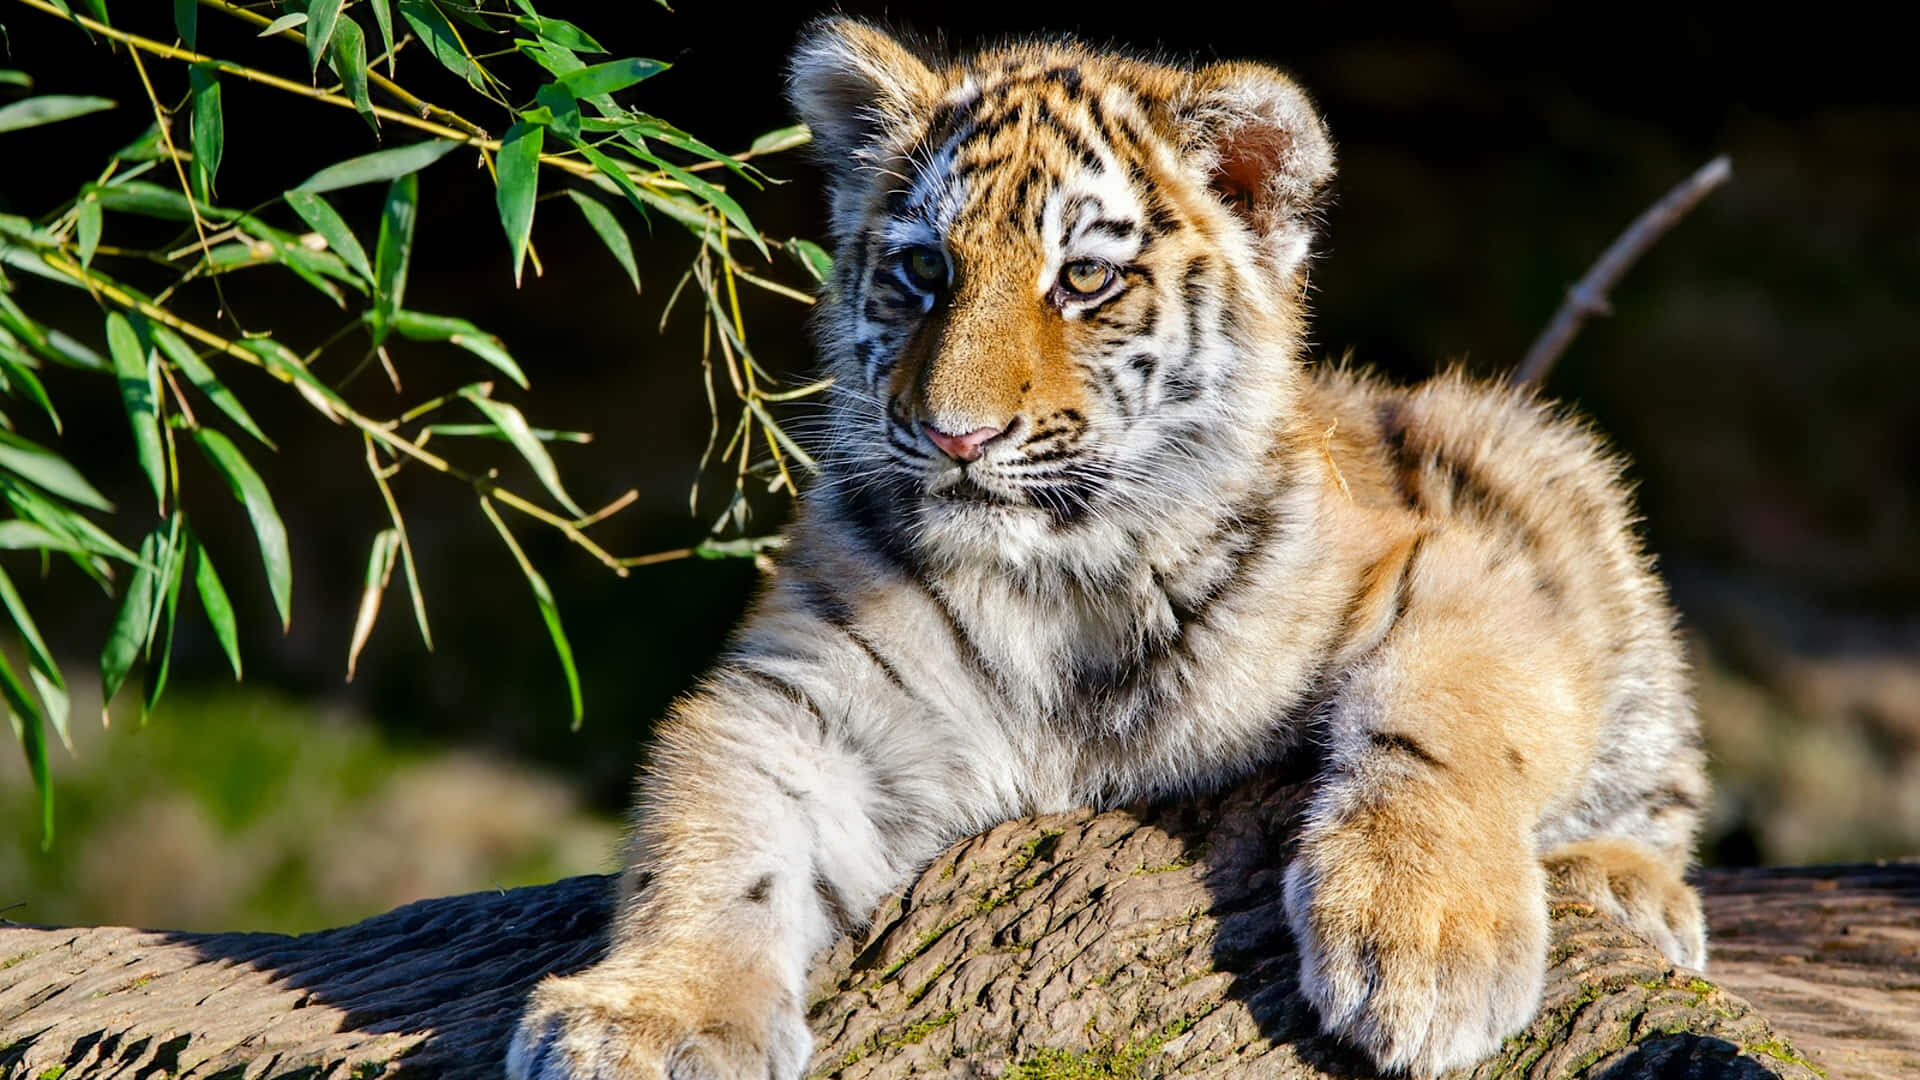 A Tiger Cub Is Sitting On A Log